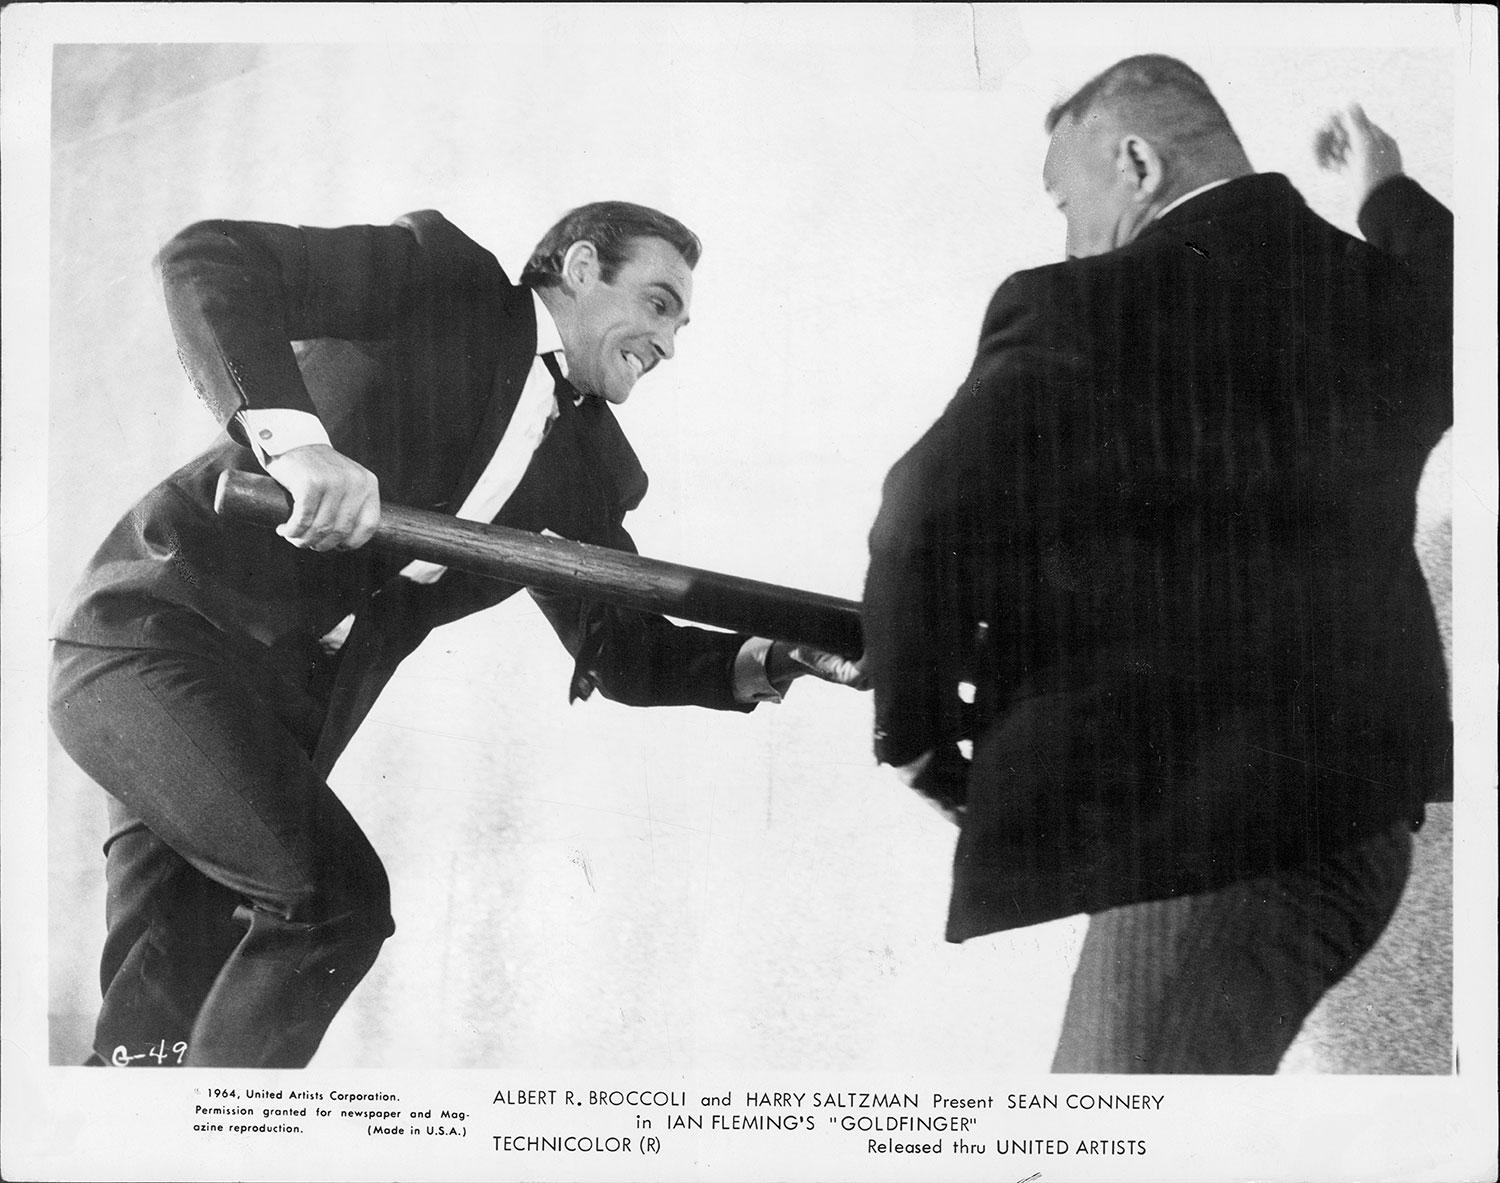 Sean Connery kämpar med skurken Oddjob i Bond-filmen ”Goldfinger”.